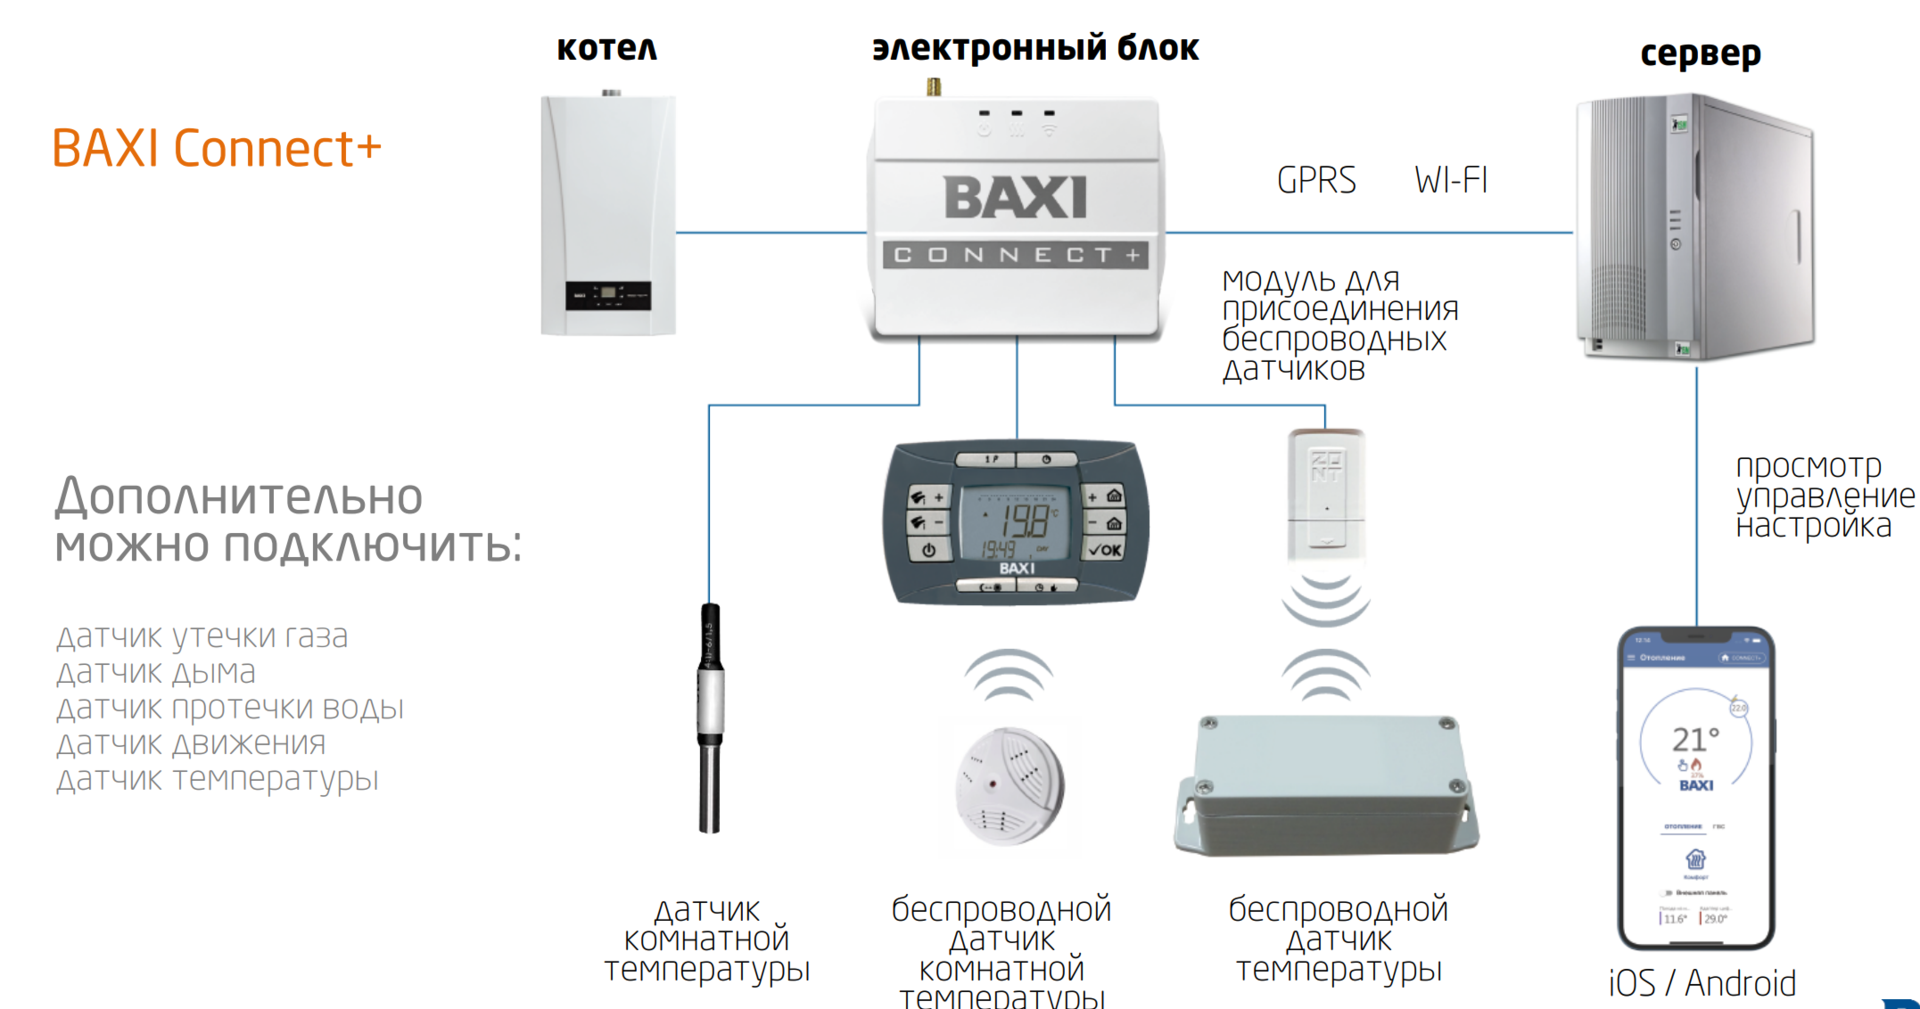 Zont котел baxi. Zont connect Baxi. GSM модуль для котла Baxi. Система удаленного управления котлом Baxi connect+. GSM модуль управления для котла бакси.